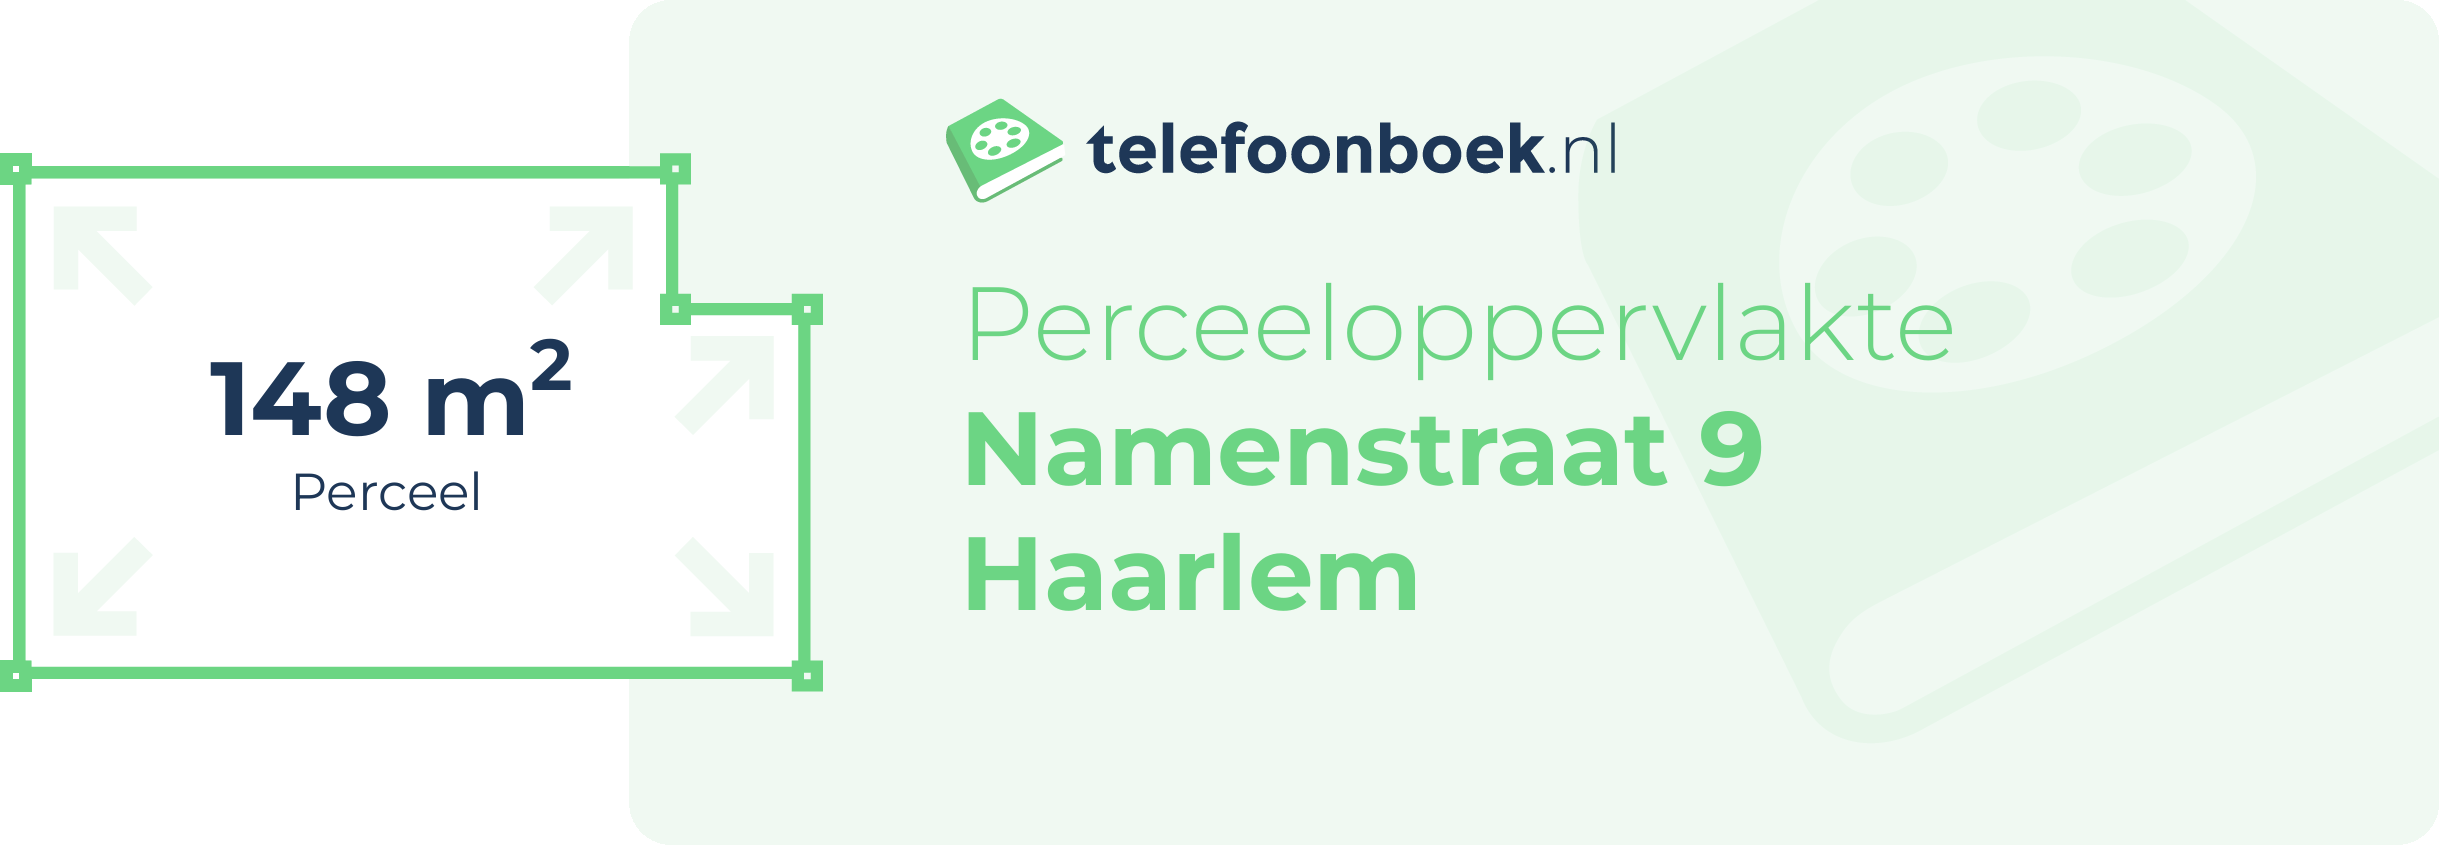 Perceeloppervlakte Namenstraat 9 Haarlem